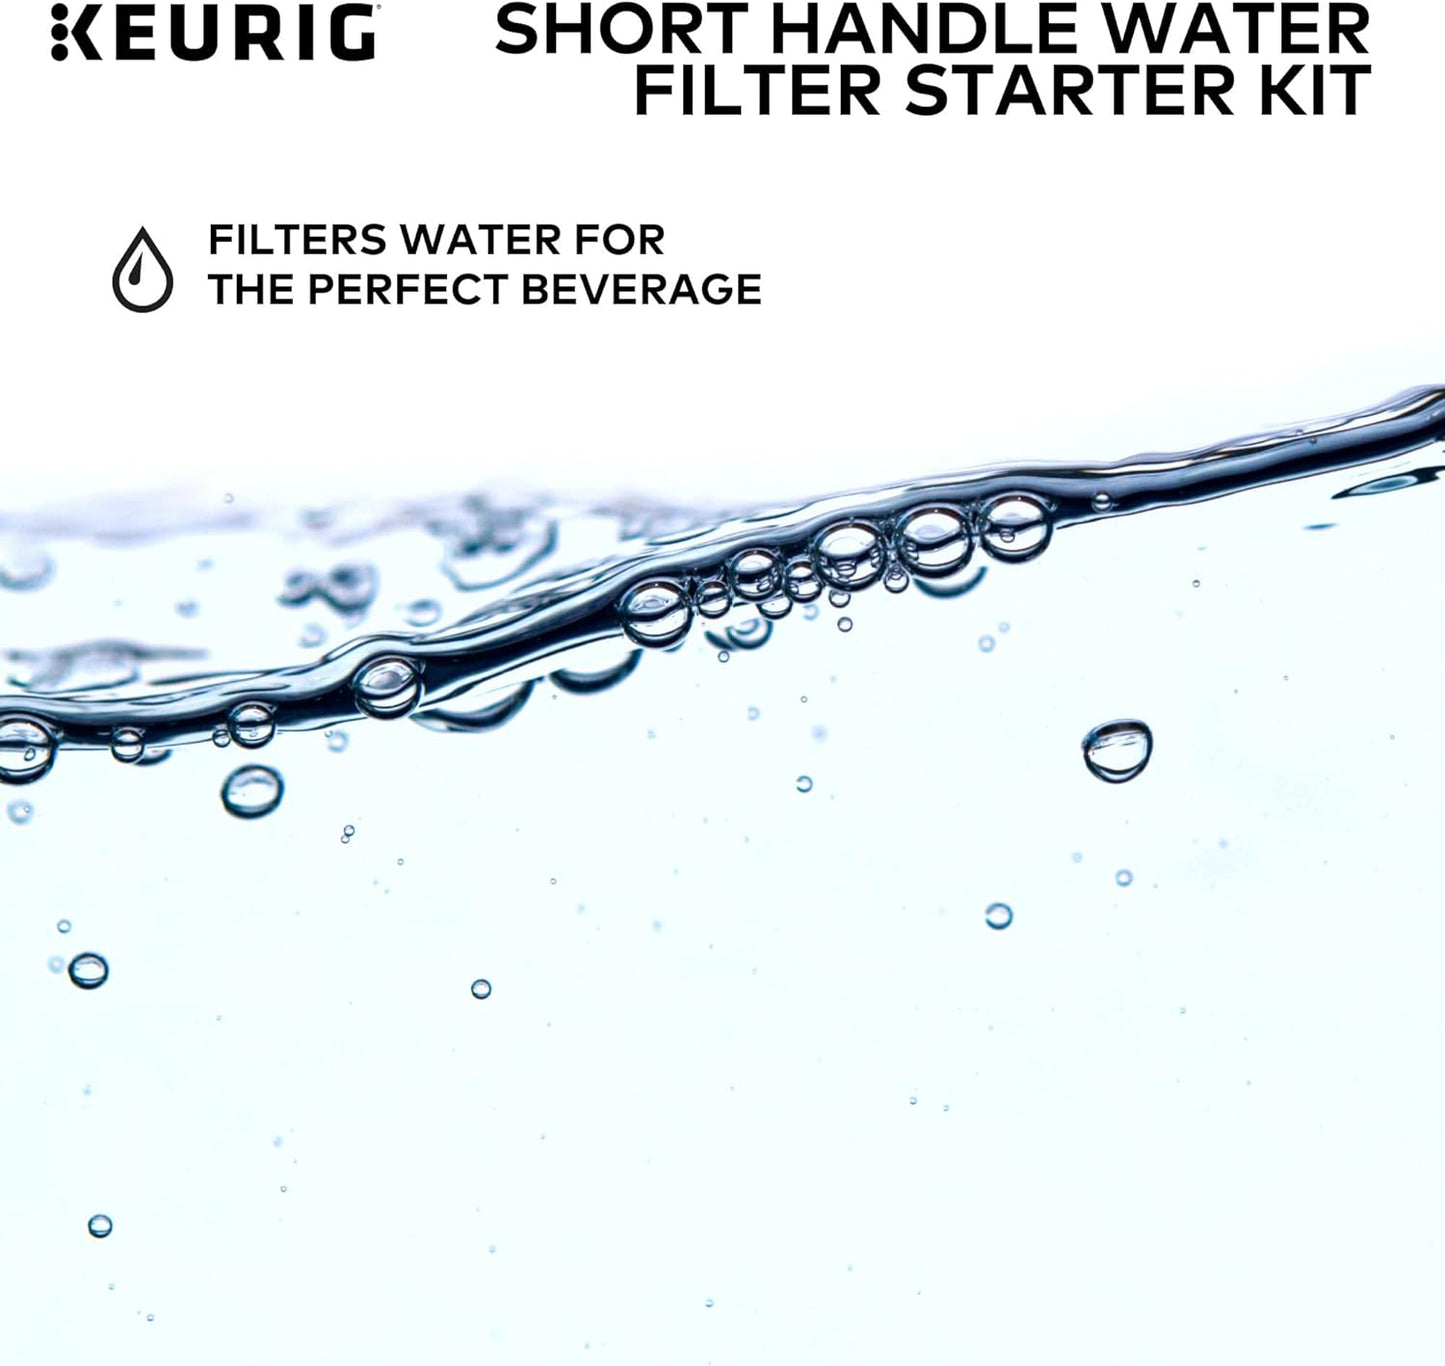 Keurig Short Handle Water Filter Starter Kit